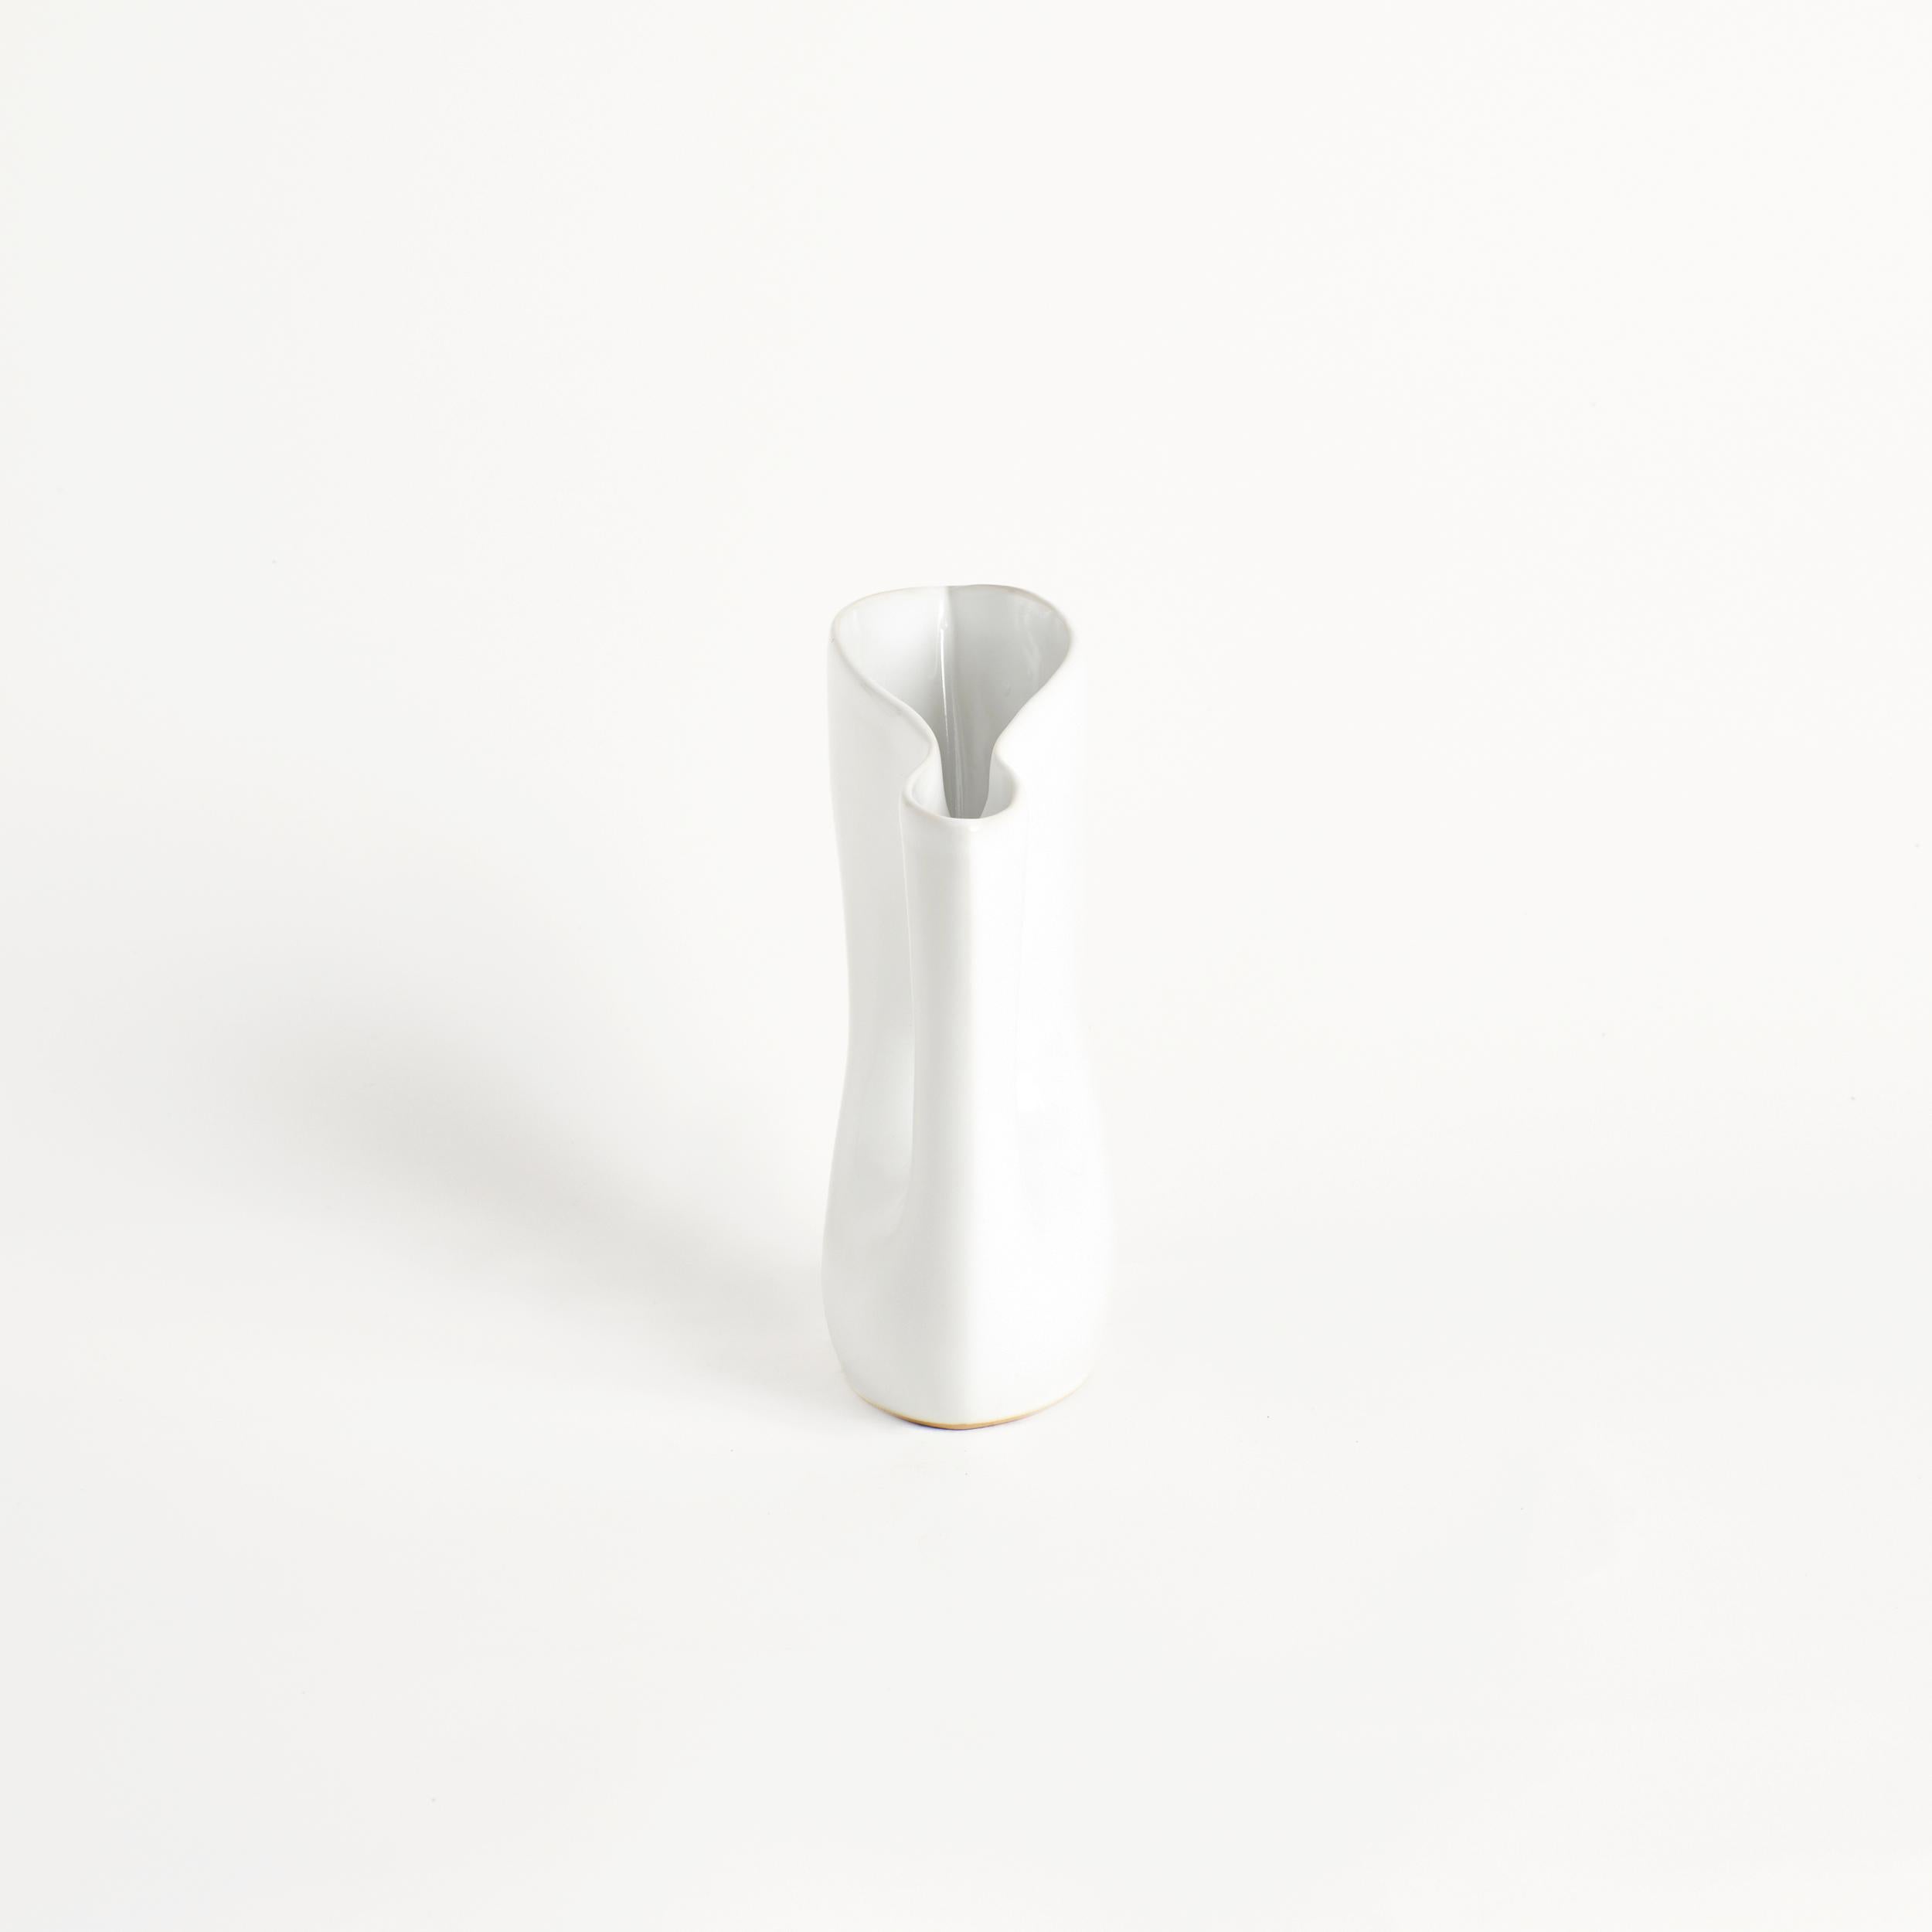 Mamasita Krug in Weiß 
Entworfen von project 213A im Jahr 2021
Handgefertigtes Steingut
Wasserdicht


Dieser elegant geformte Krug hat eine fortgesetzte Öffnung und wurde von einer umgefallenen Vase inspiriert. Das Stück soll mit Design und